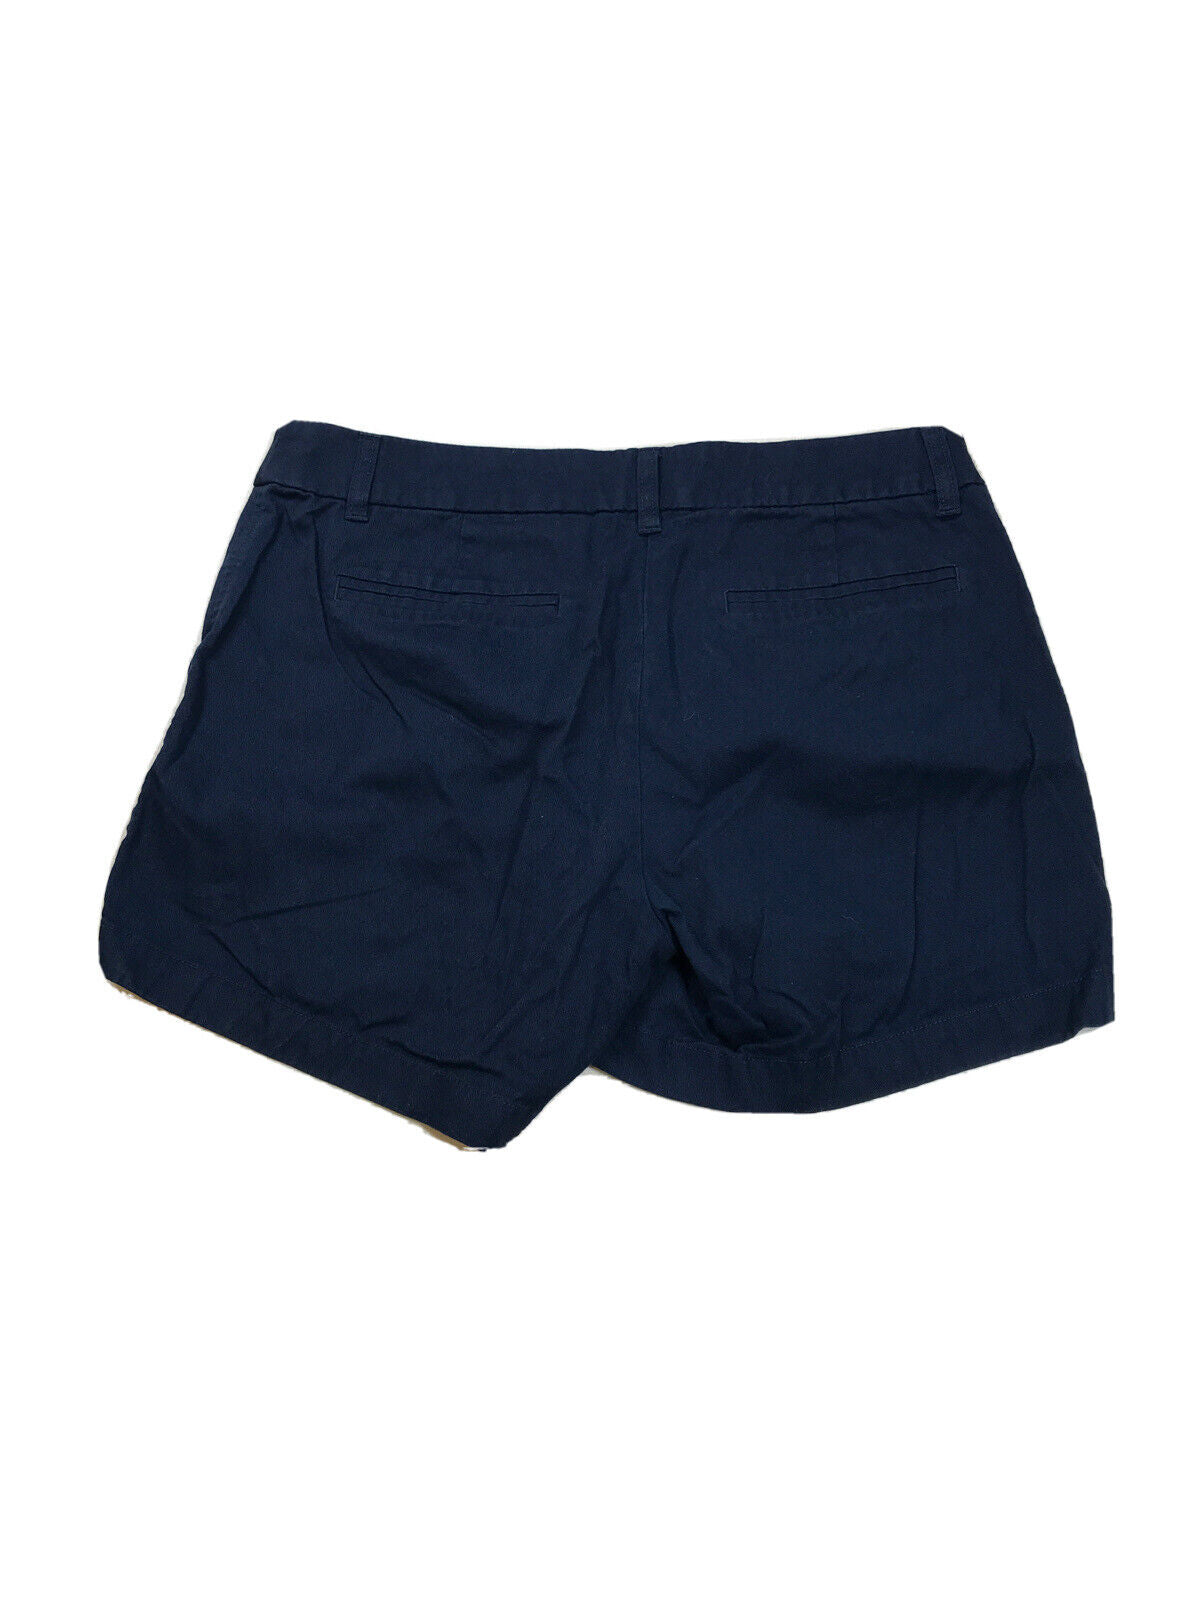 J.Crew Pantalones cortos chinos de algodón azul para mujer - 10